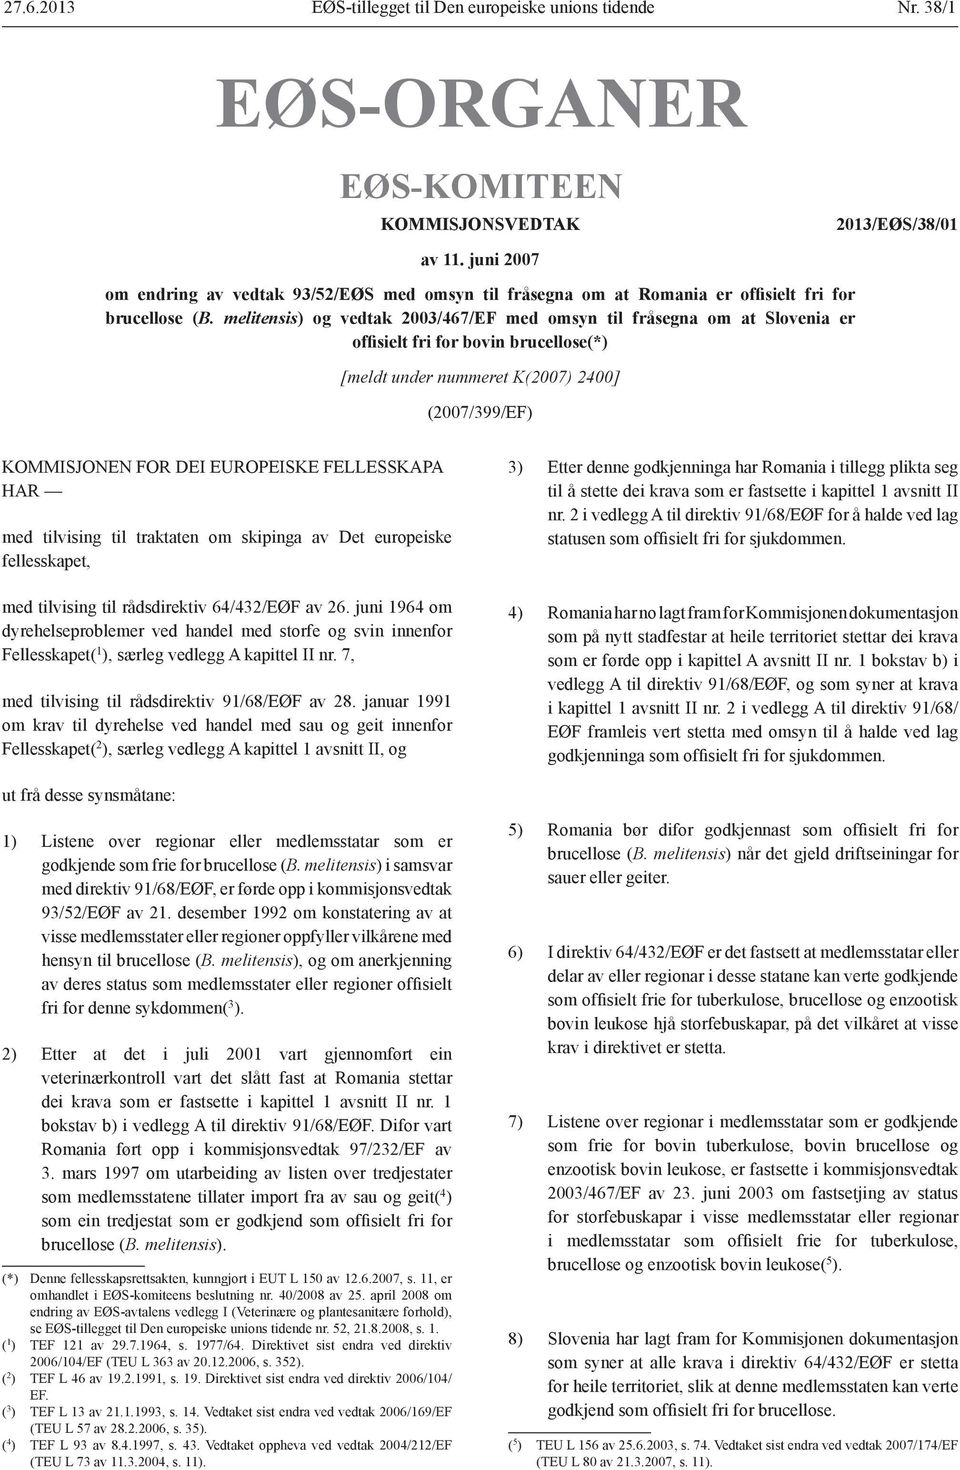 melitensis) og vedtak 2003/467/EF med omsyn til fråsegna om at Slovenia er offisielt fri for bovin brucellose(*) [meldt under nummeret K(2007) 2400] (2007/399/EF) KOMMISJONEN FOR DEI EUROPEISKE